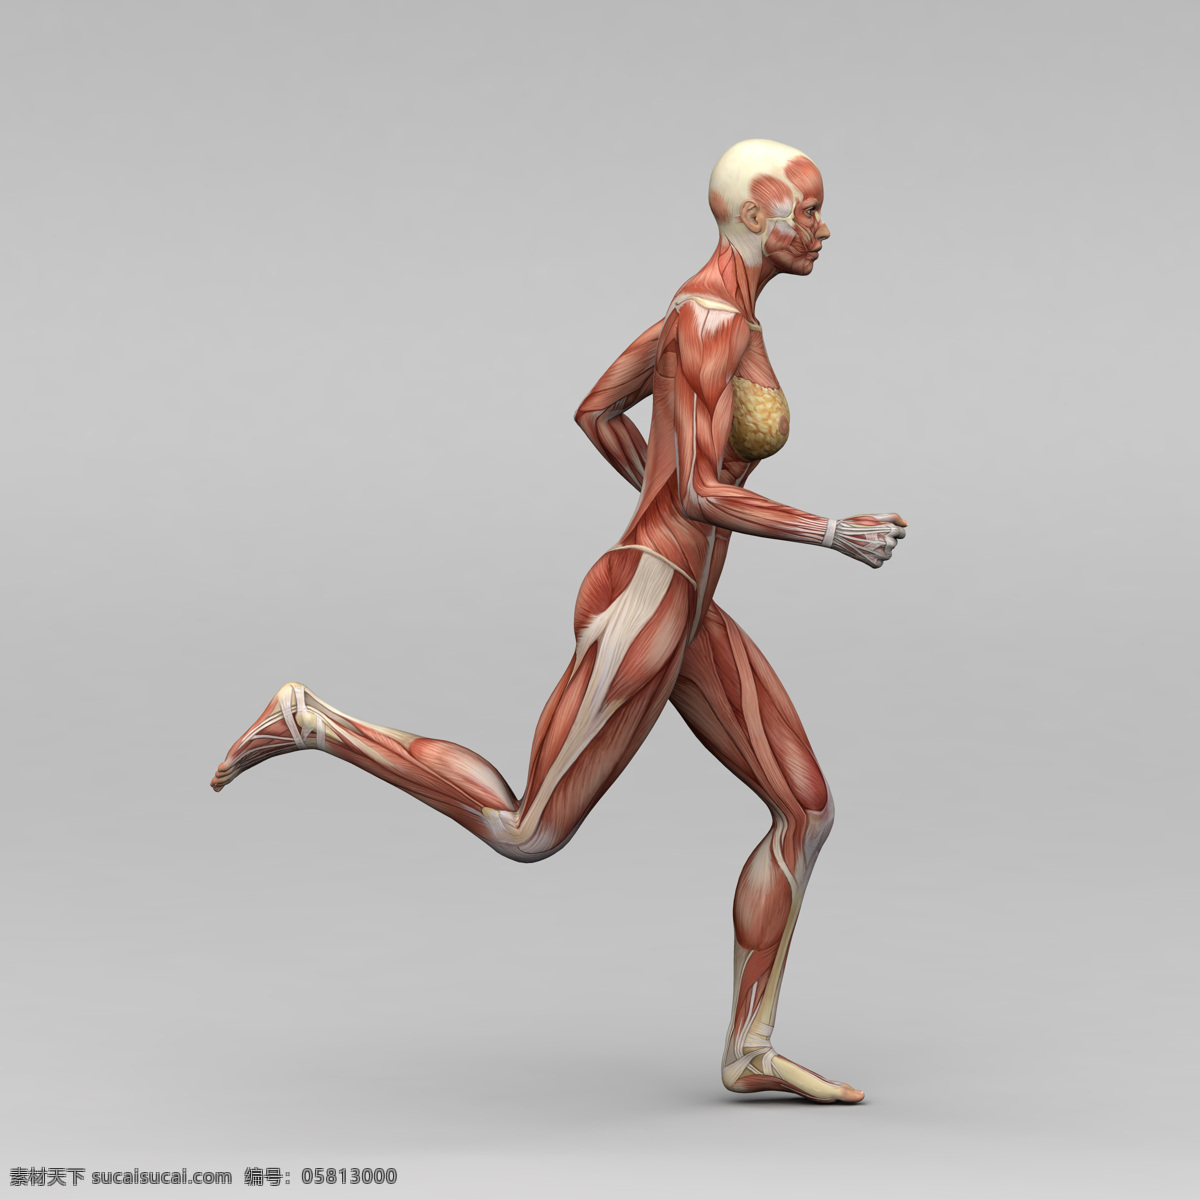 跑步 动作 肌肉 组织 女人 人体 素描画 女性 人体肌肉器官 肌肉结构 人体解剖学 人体器官 其他人物 人物图库 医疗护理 现代科技